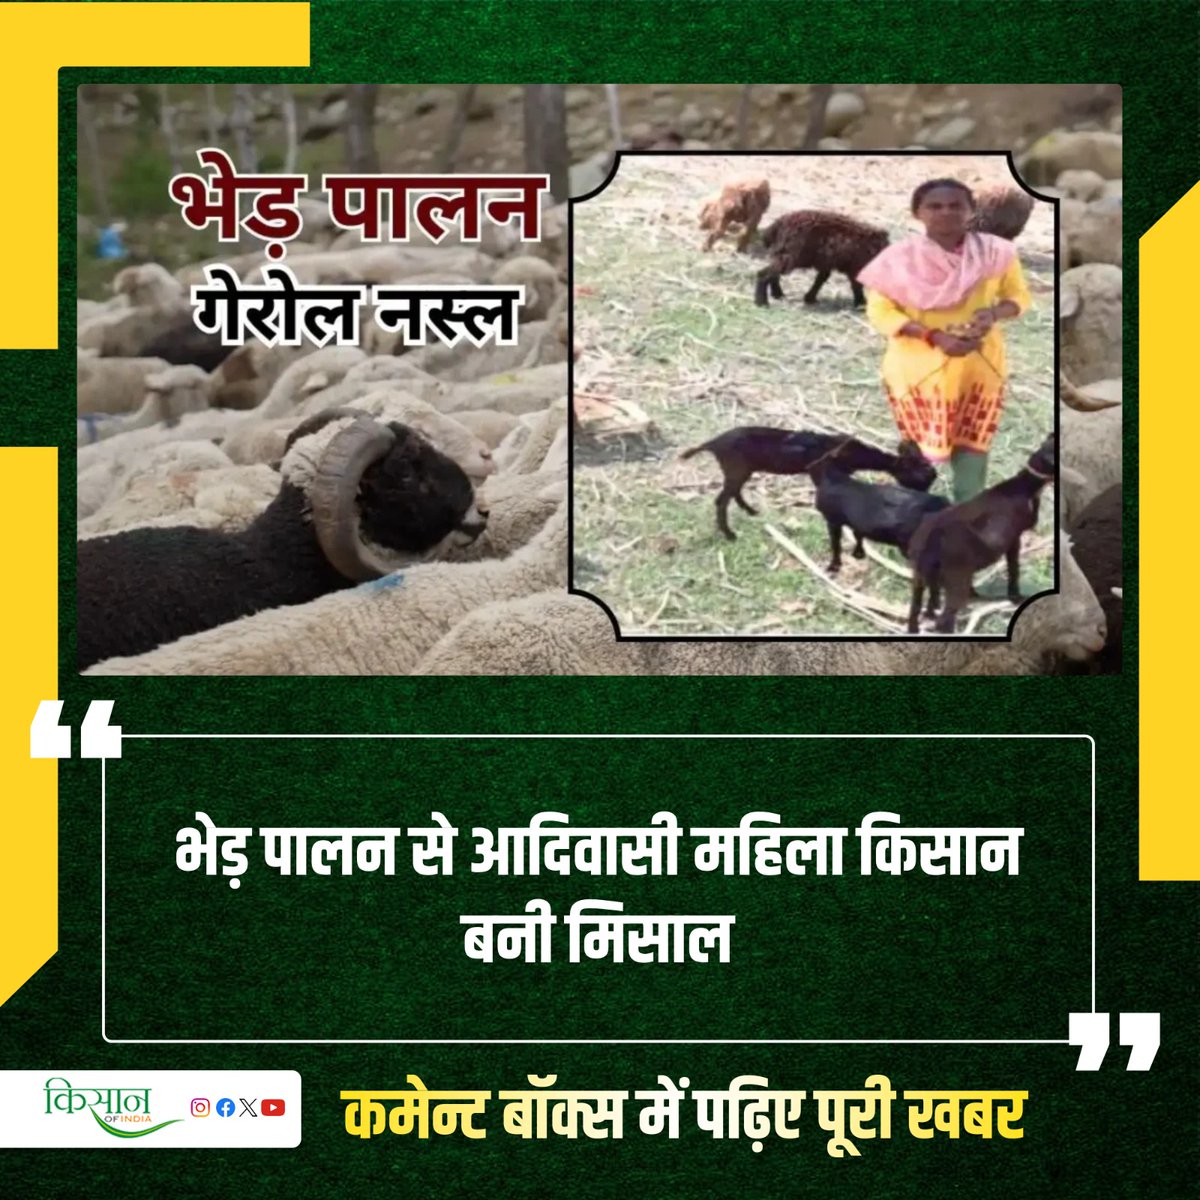 गरीब किसानों के लिए भेड़ बकरी आजीविका का मुख्य साधन है। जानिए भेड़ पालन की वैज्ञानिक तकनीक अपनाकर आरती ने कैसे सुधारी अपनी आर्थिक स्थिति? #GoatFarming #KisanOfIndia #Animalhusbandry #TribalWoman #SheepFarming